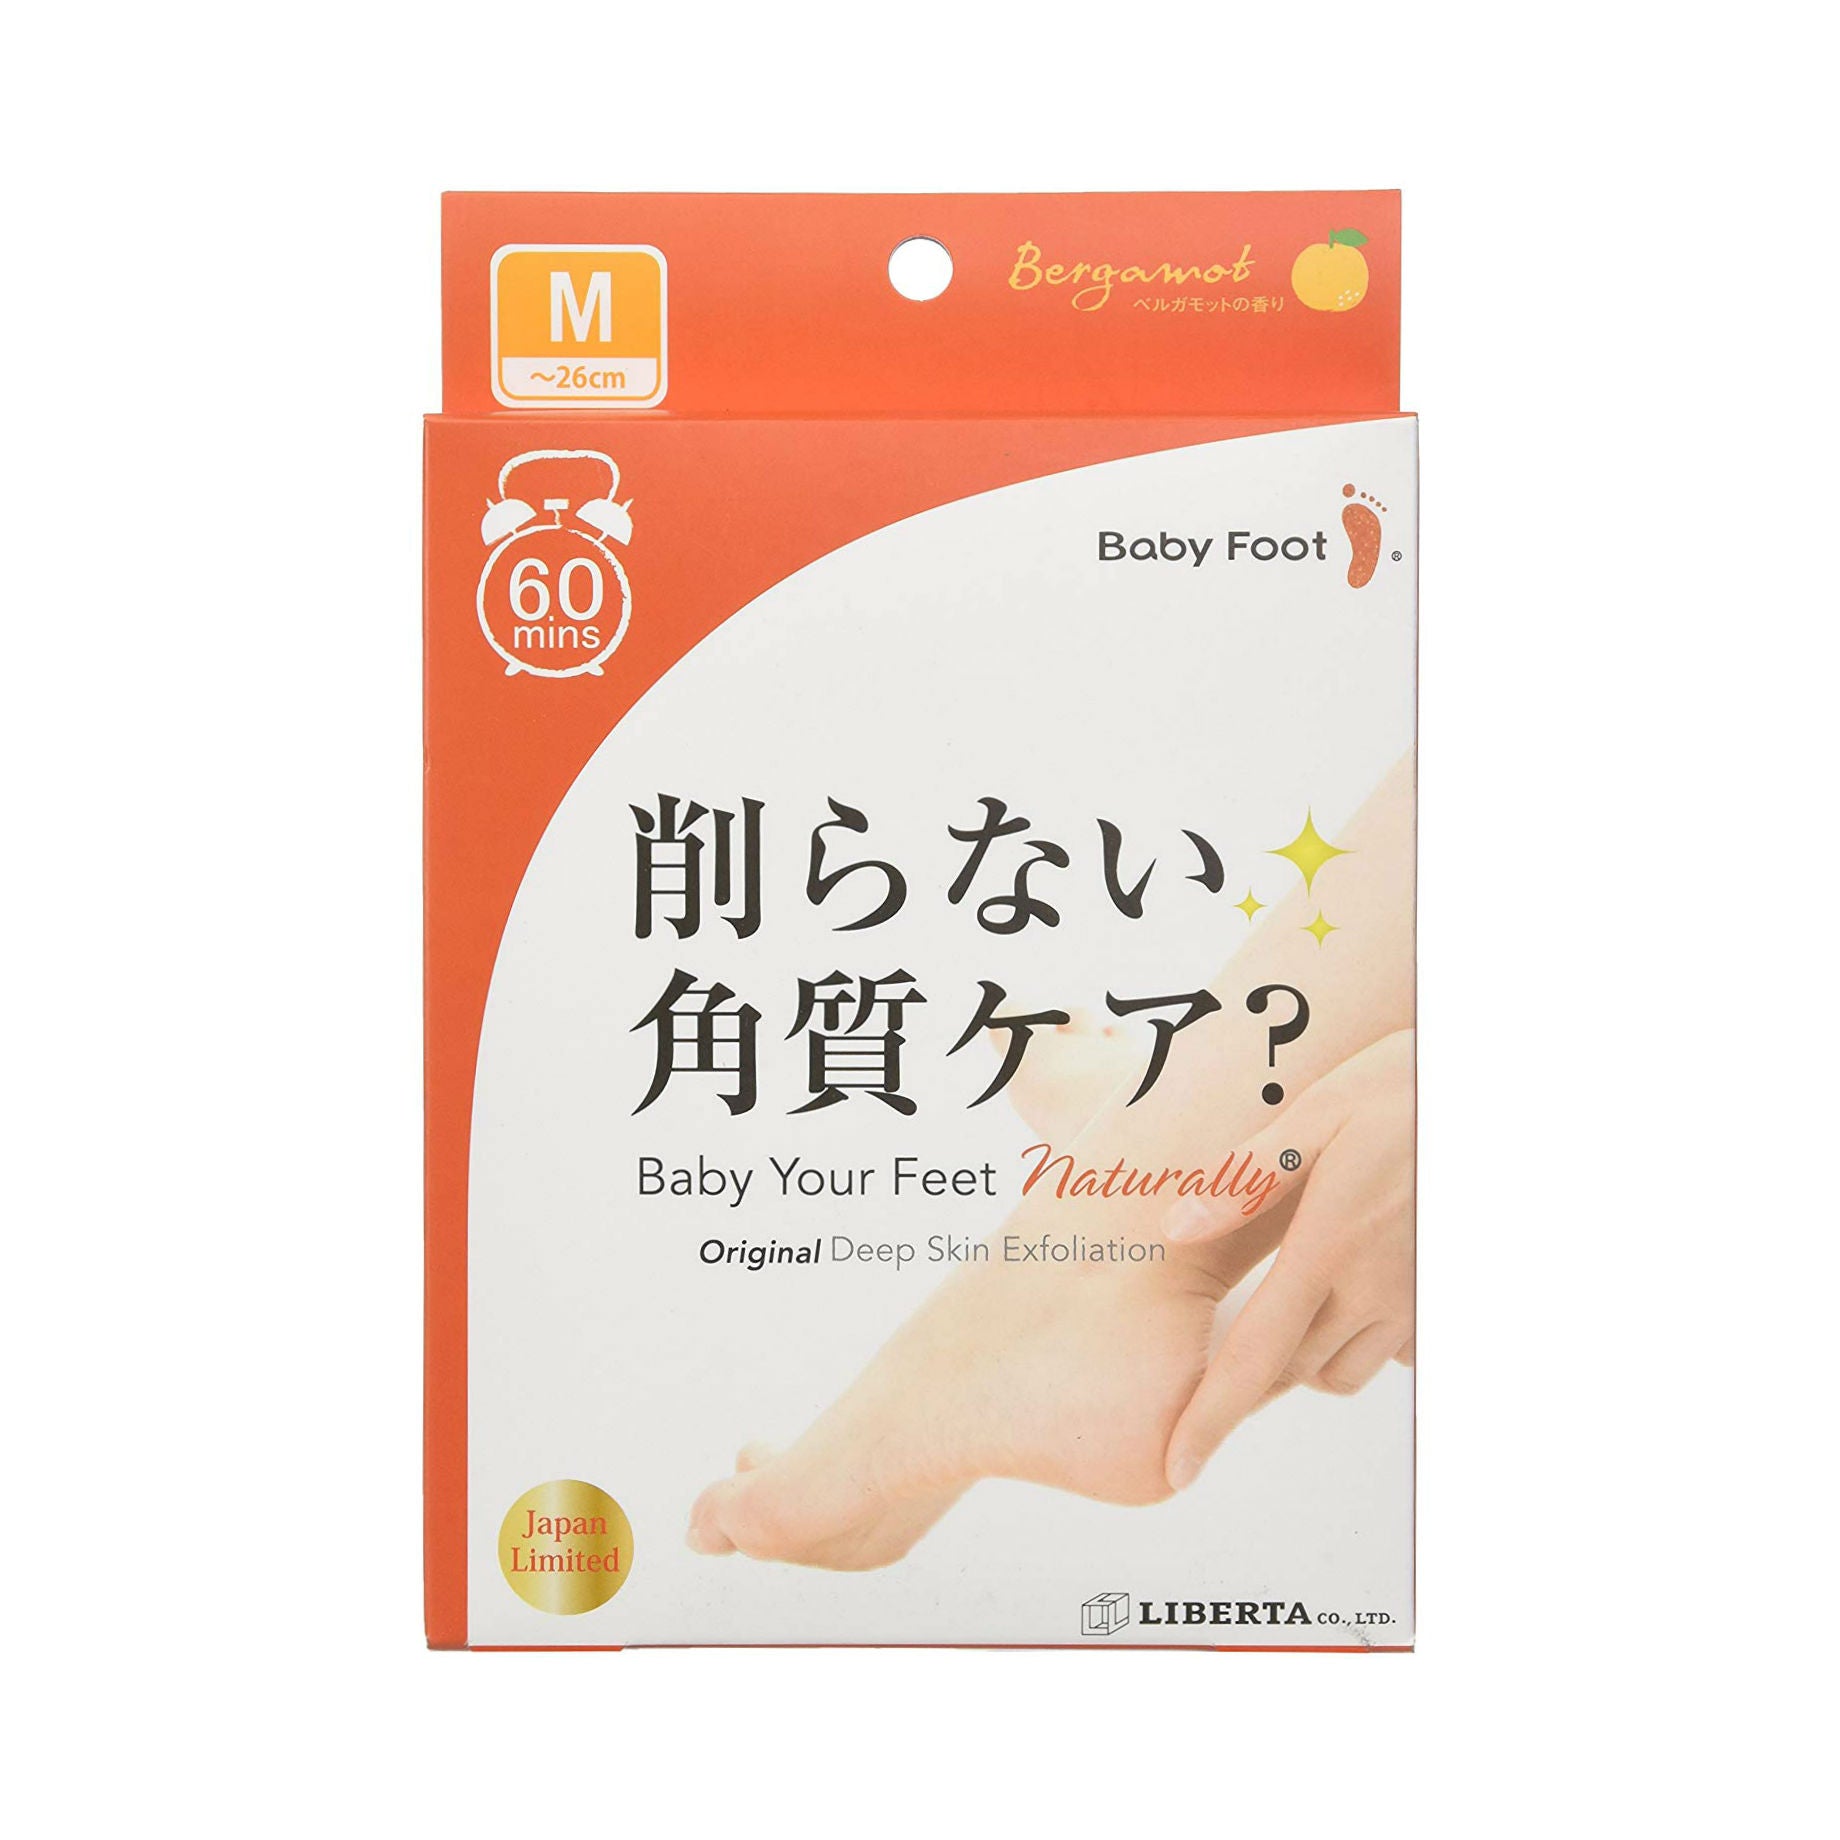 Baby Foot Deep Skin Foot Pack Japan Version (M) Beauty Baby Foot   